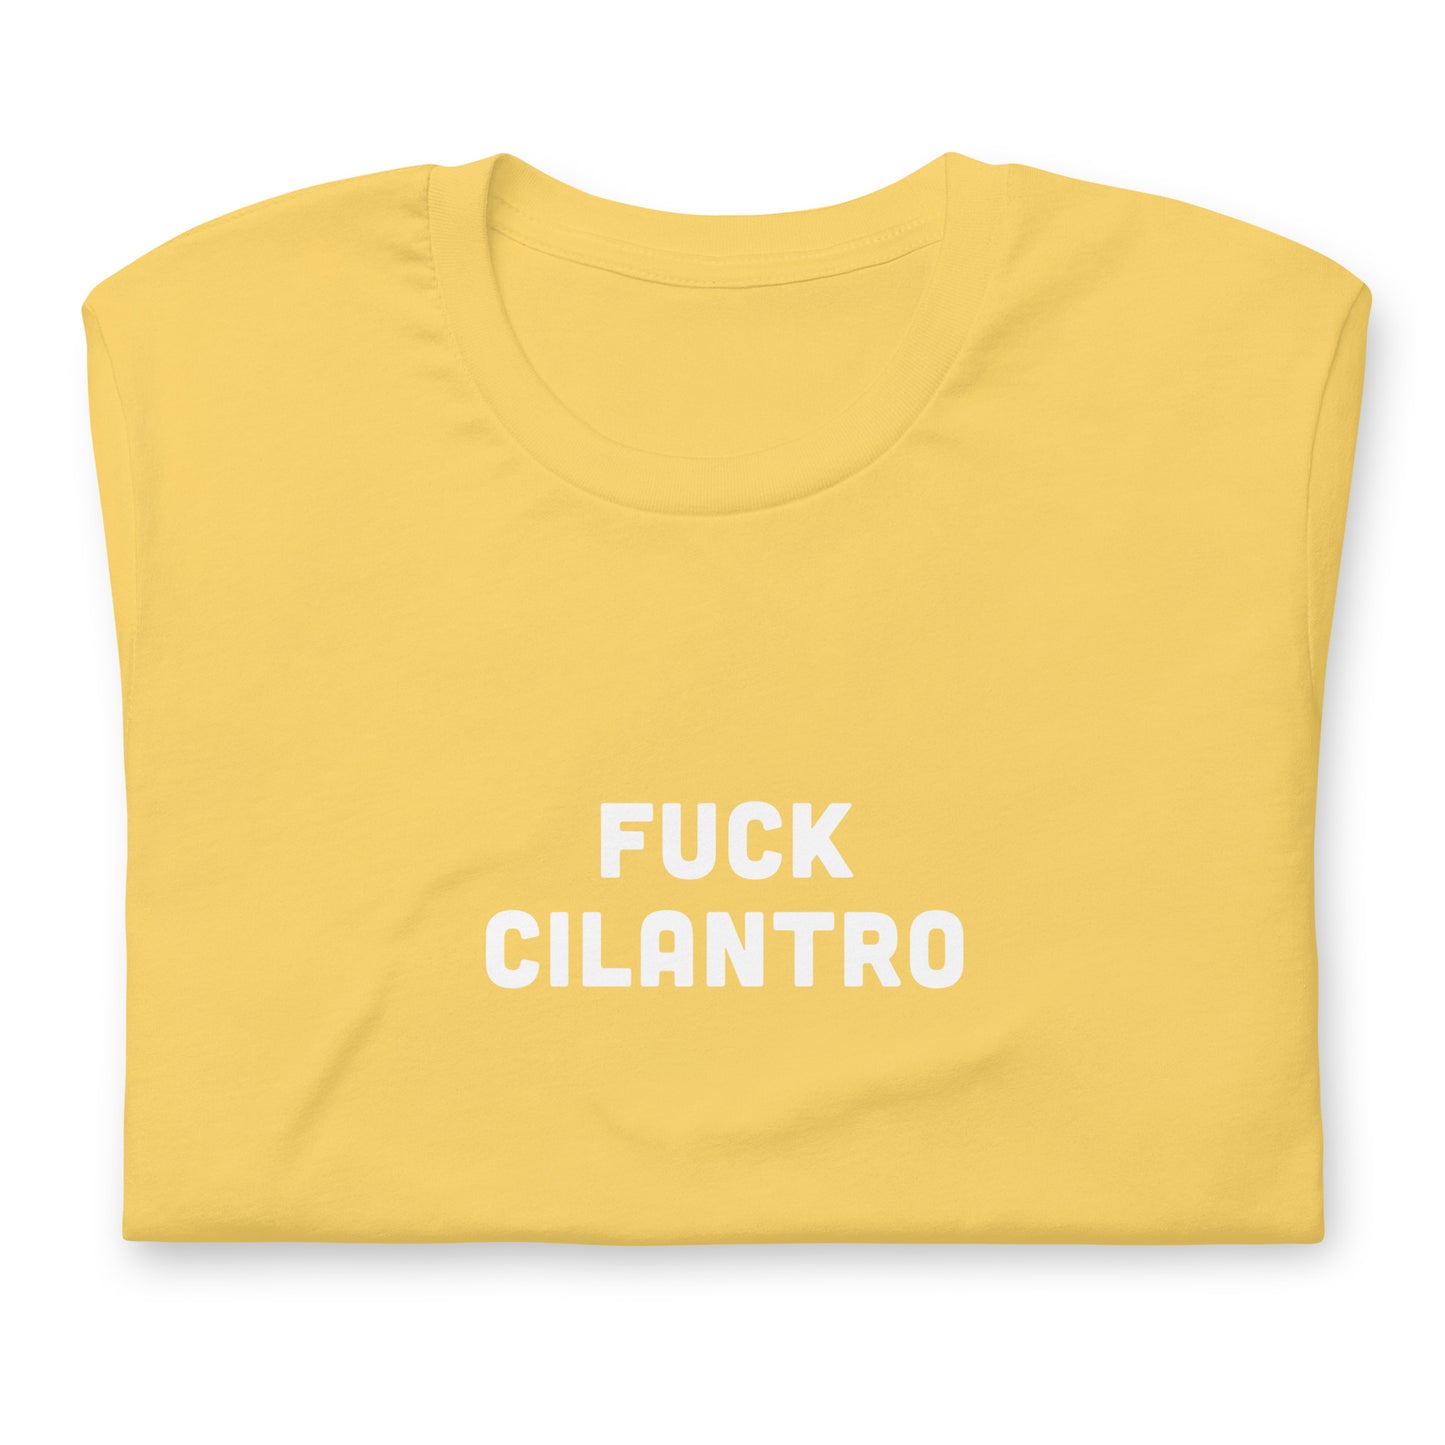 Fuck Cilantro t-shirt  XL Color Asphalt